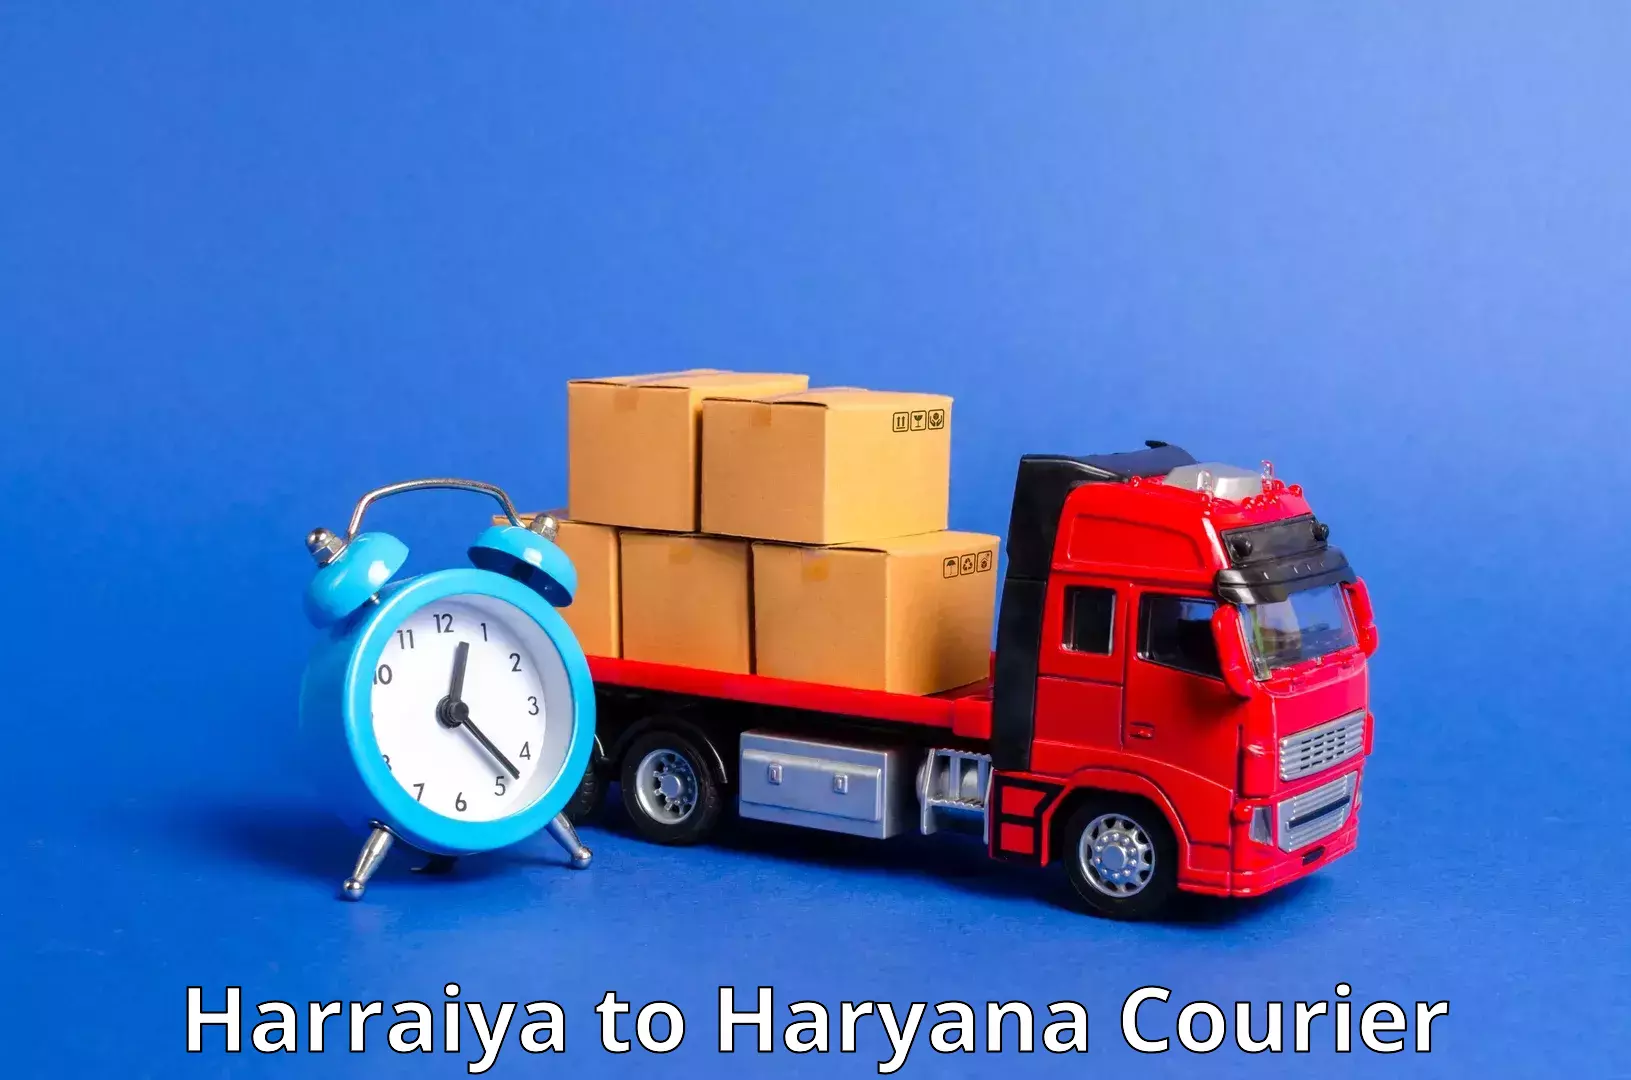 Express mail solutions Harraiya to Haryana